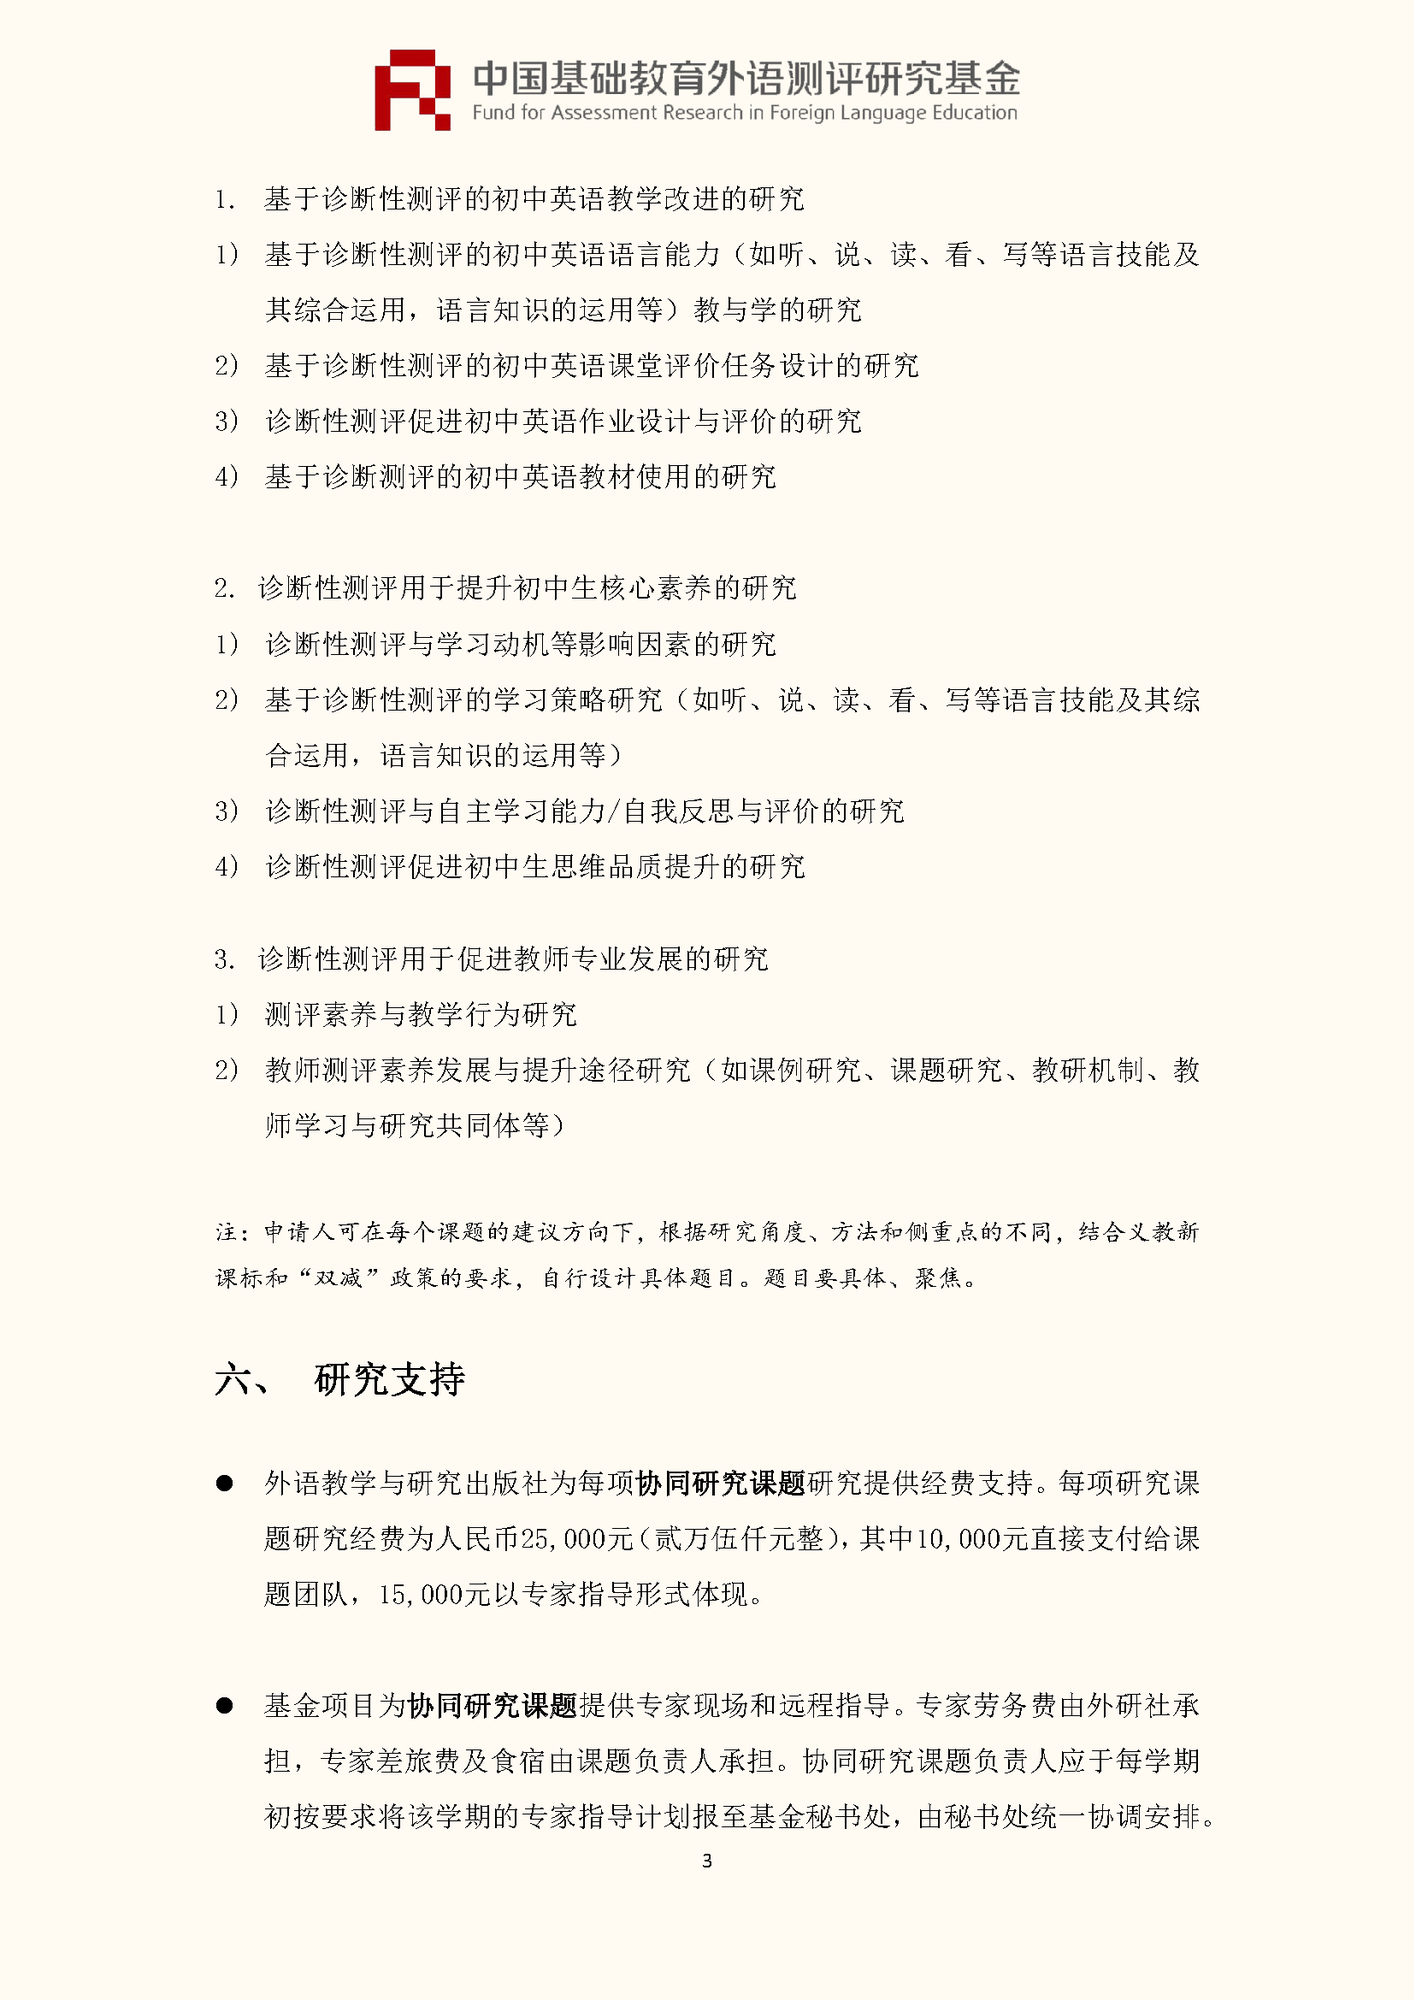 0520-”中国基础教育外语测评研究基金“项目第四期课题申报指南_页面_05